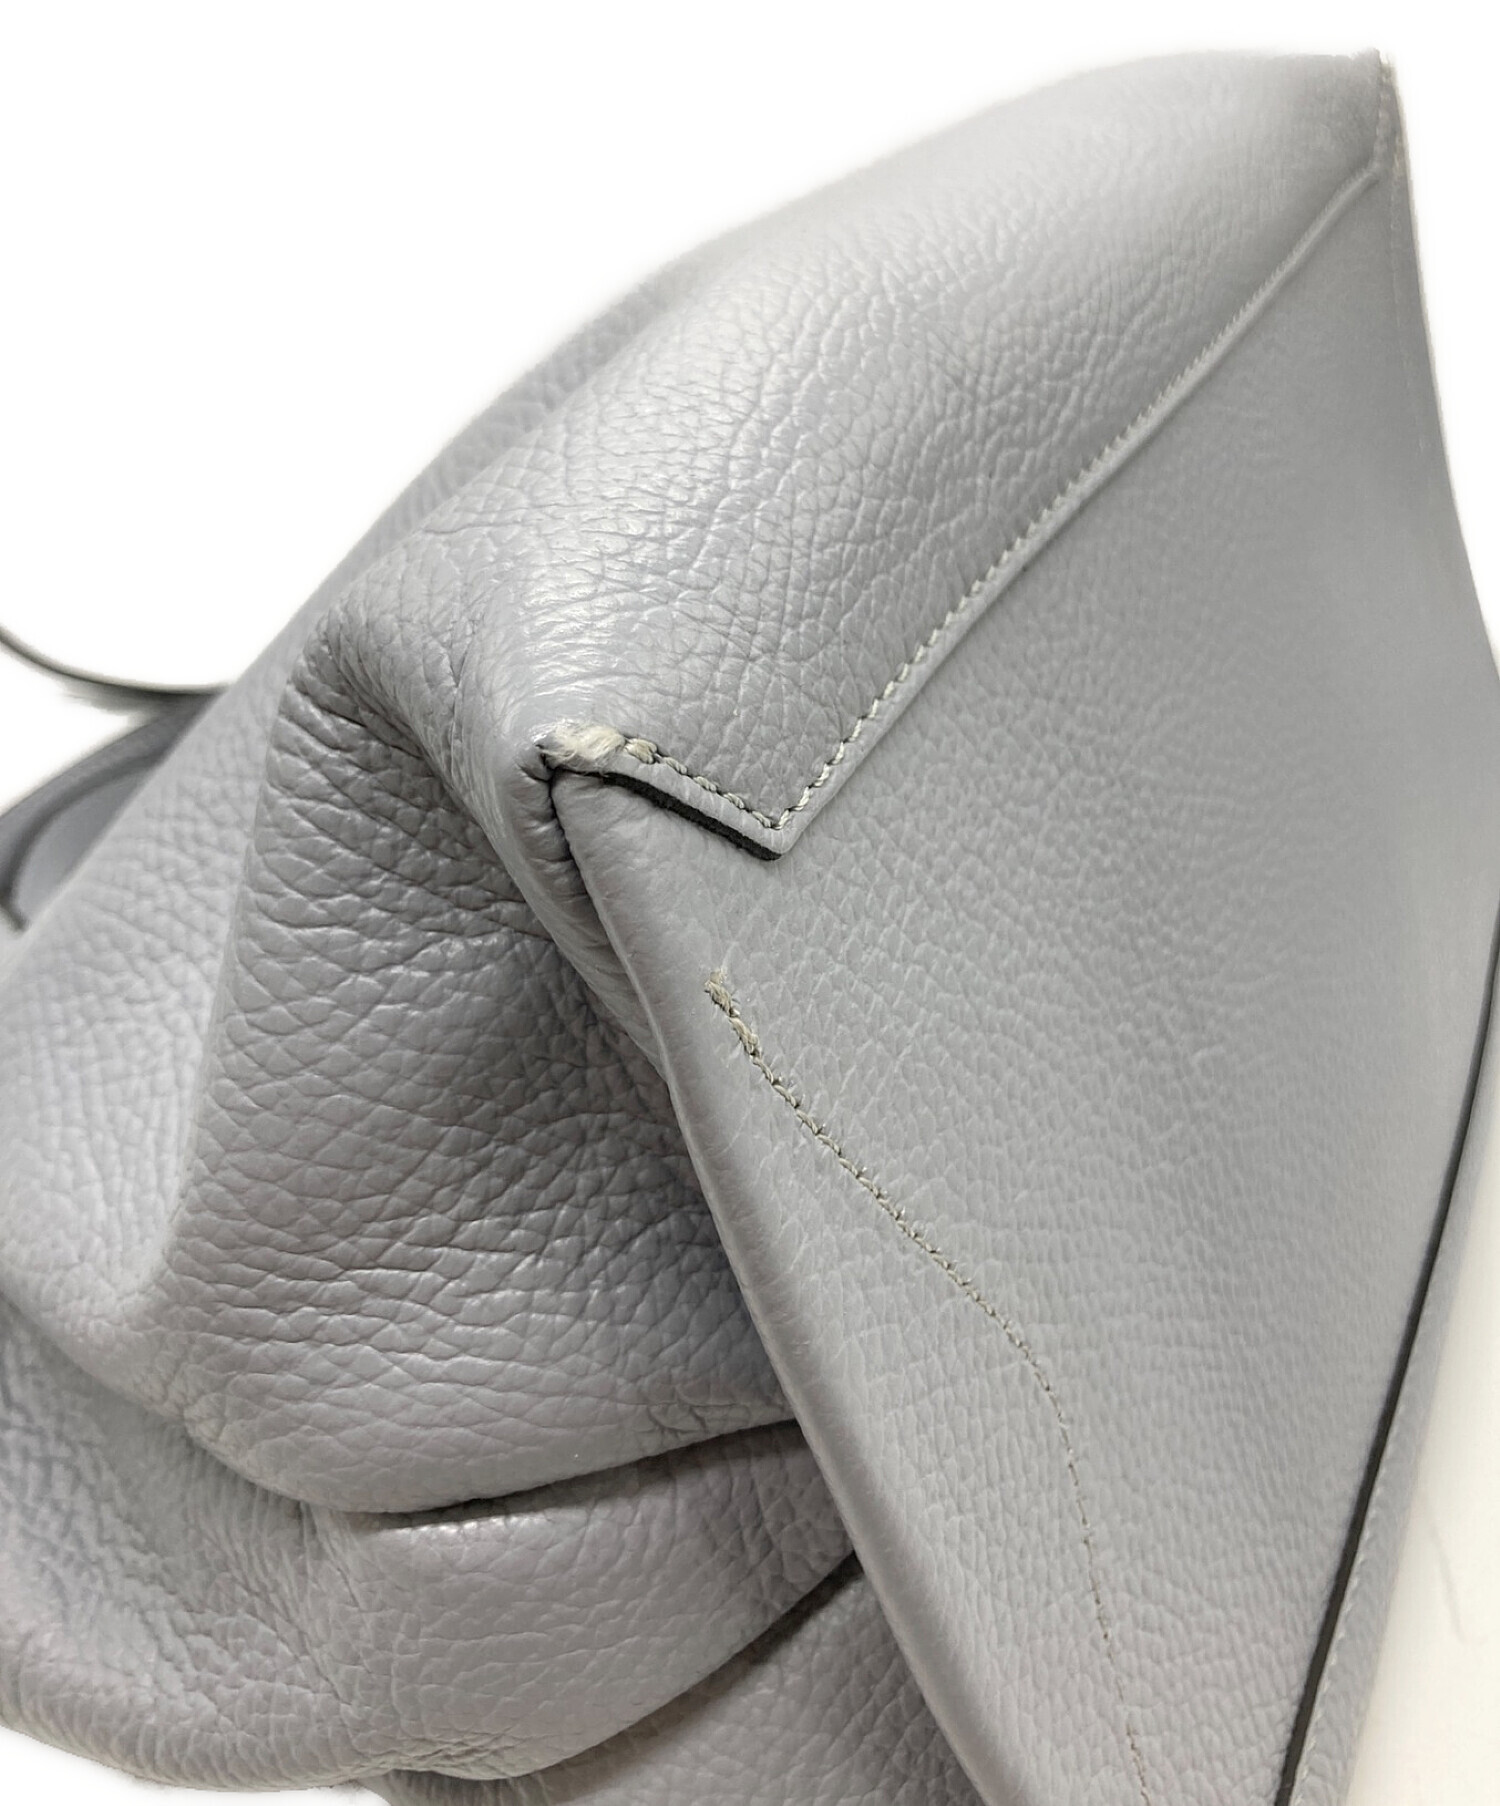 ジャンニキャリーニ／GIANNI CHIARINI  バッグ ショルダーバッグ 鞄 レディース 女性 女性用 スエード スウェード レザー 革 本革 グレー 灰色 5356cm-bbl 2WAY ハンドバッグ